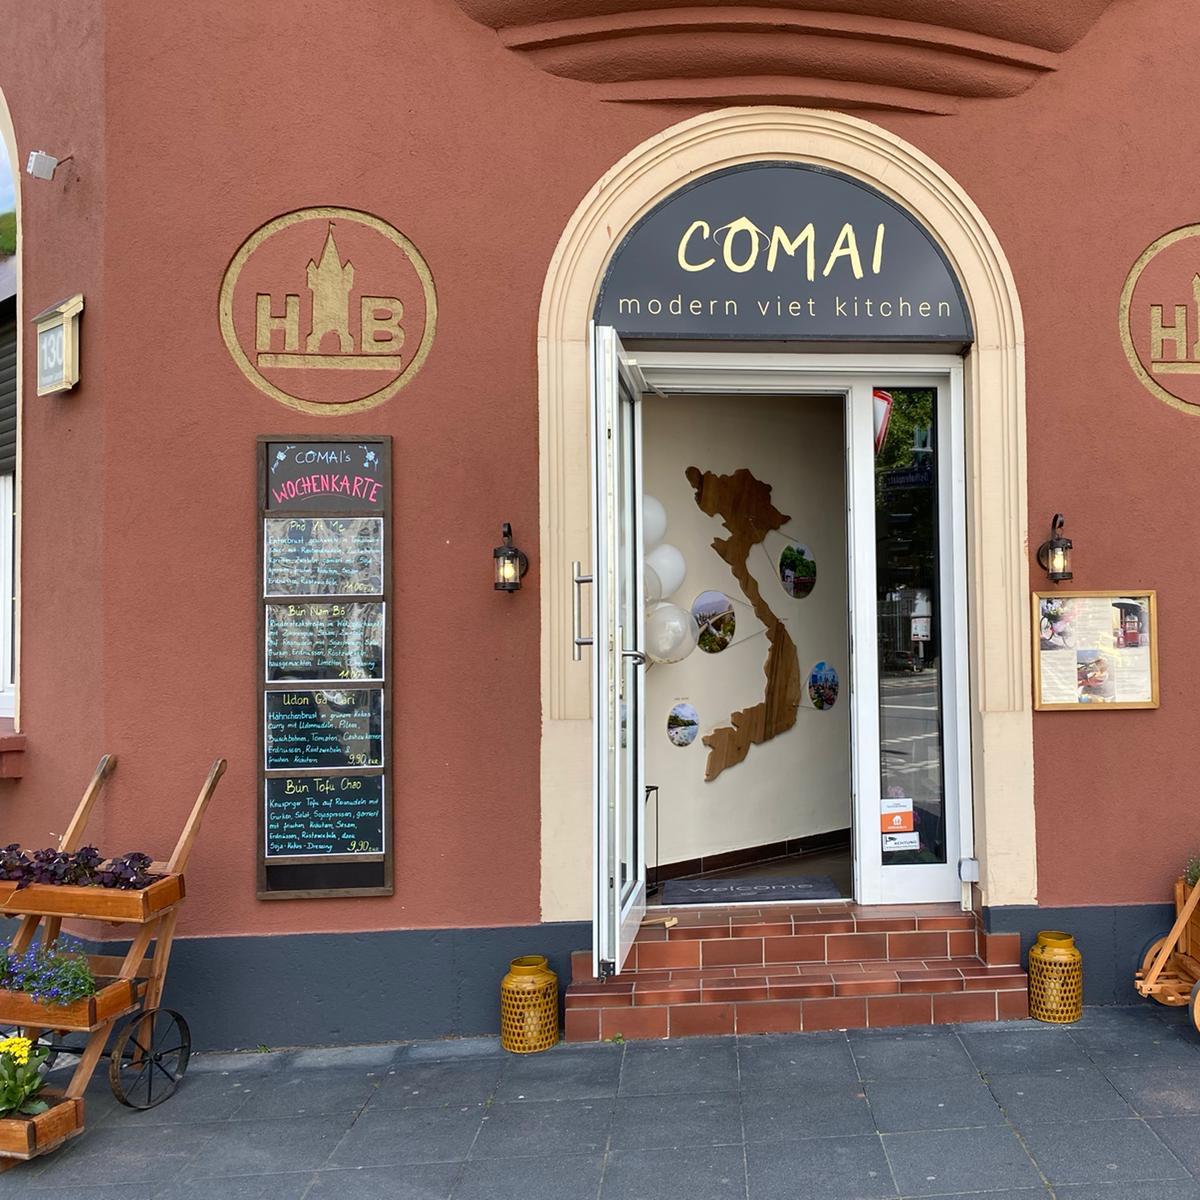 Restaurant "COMAI East - modern viet kitchen" in Frankfurt am Main